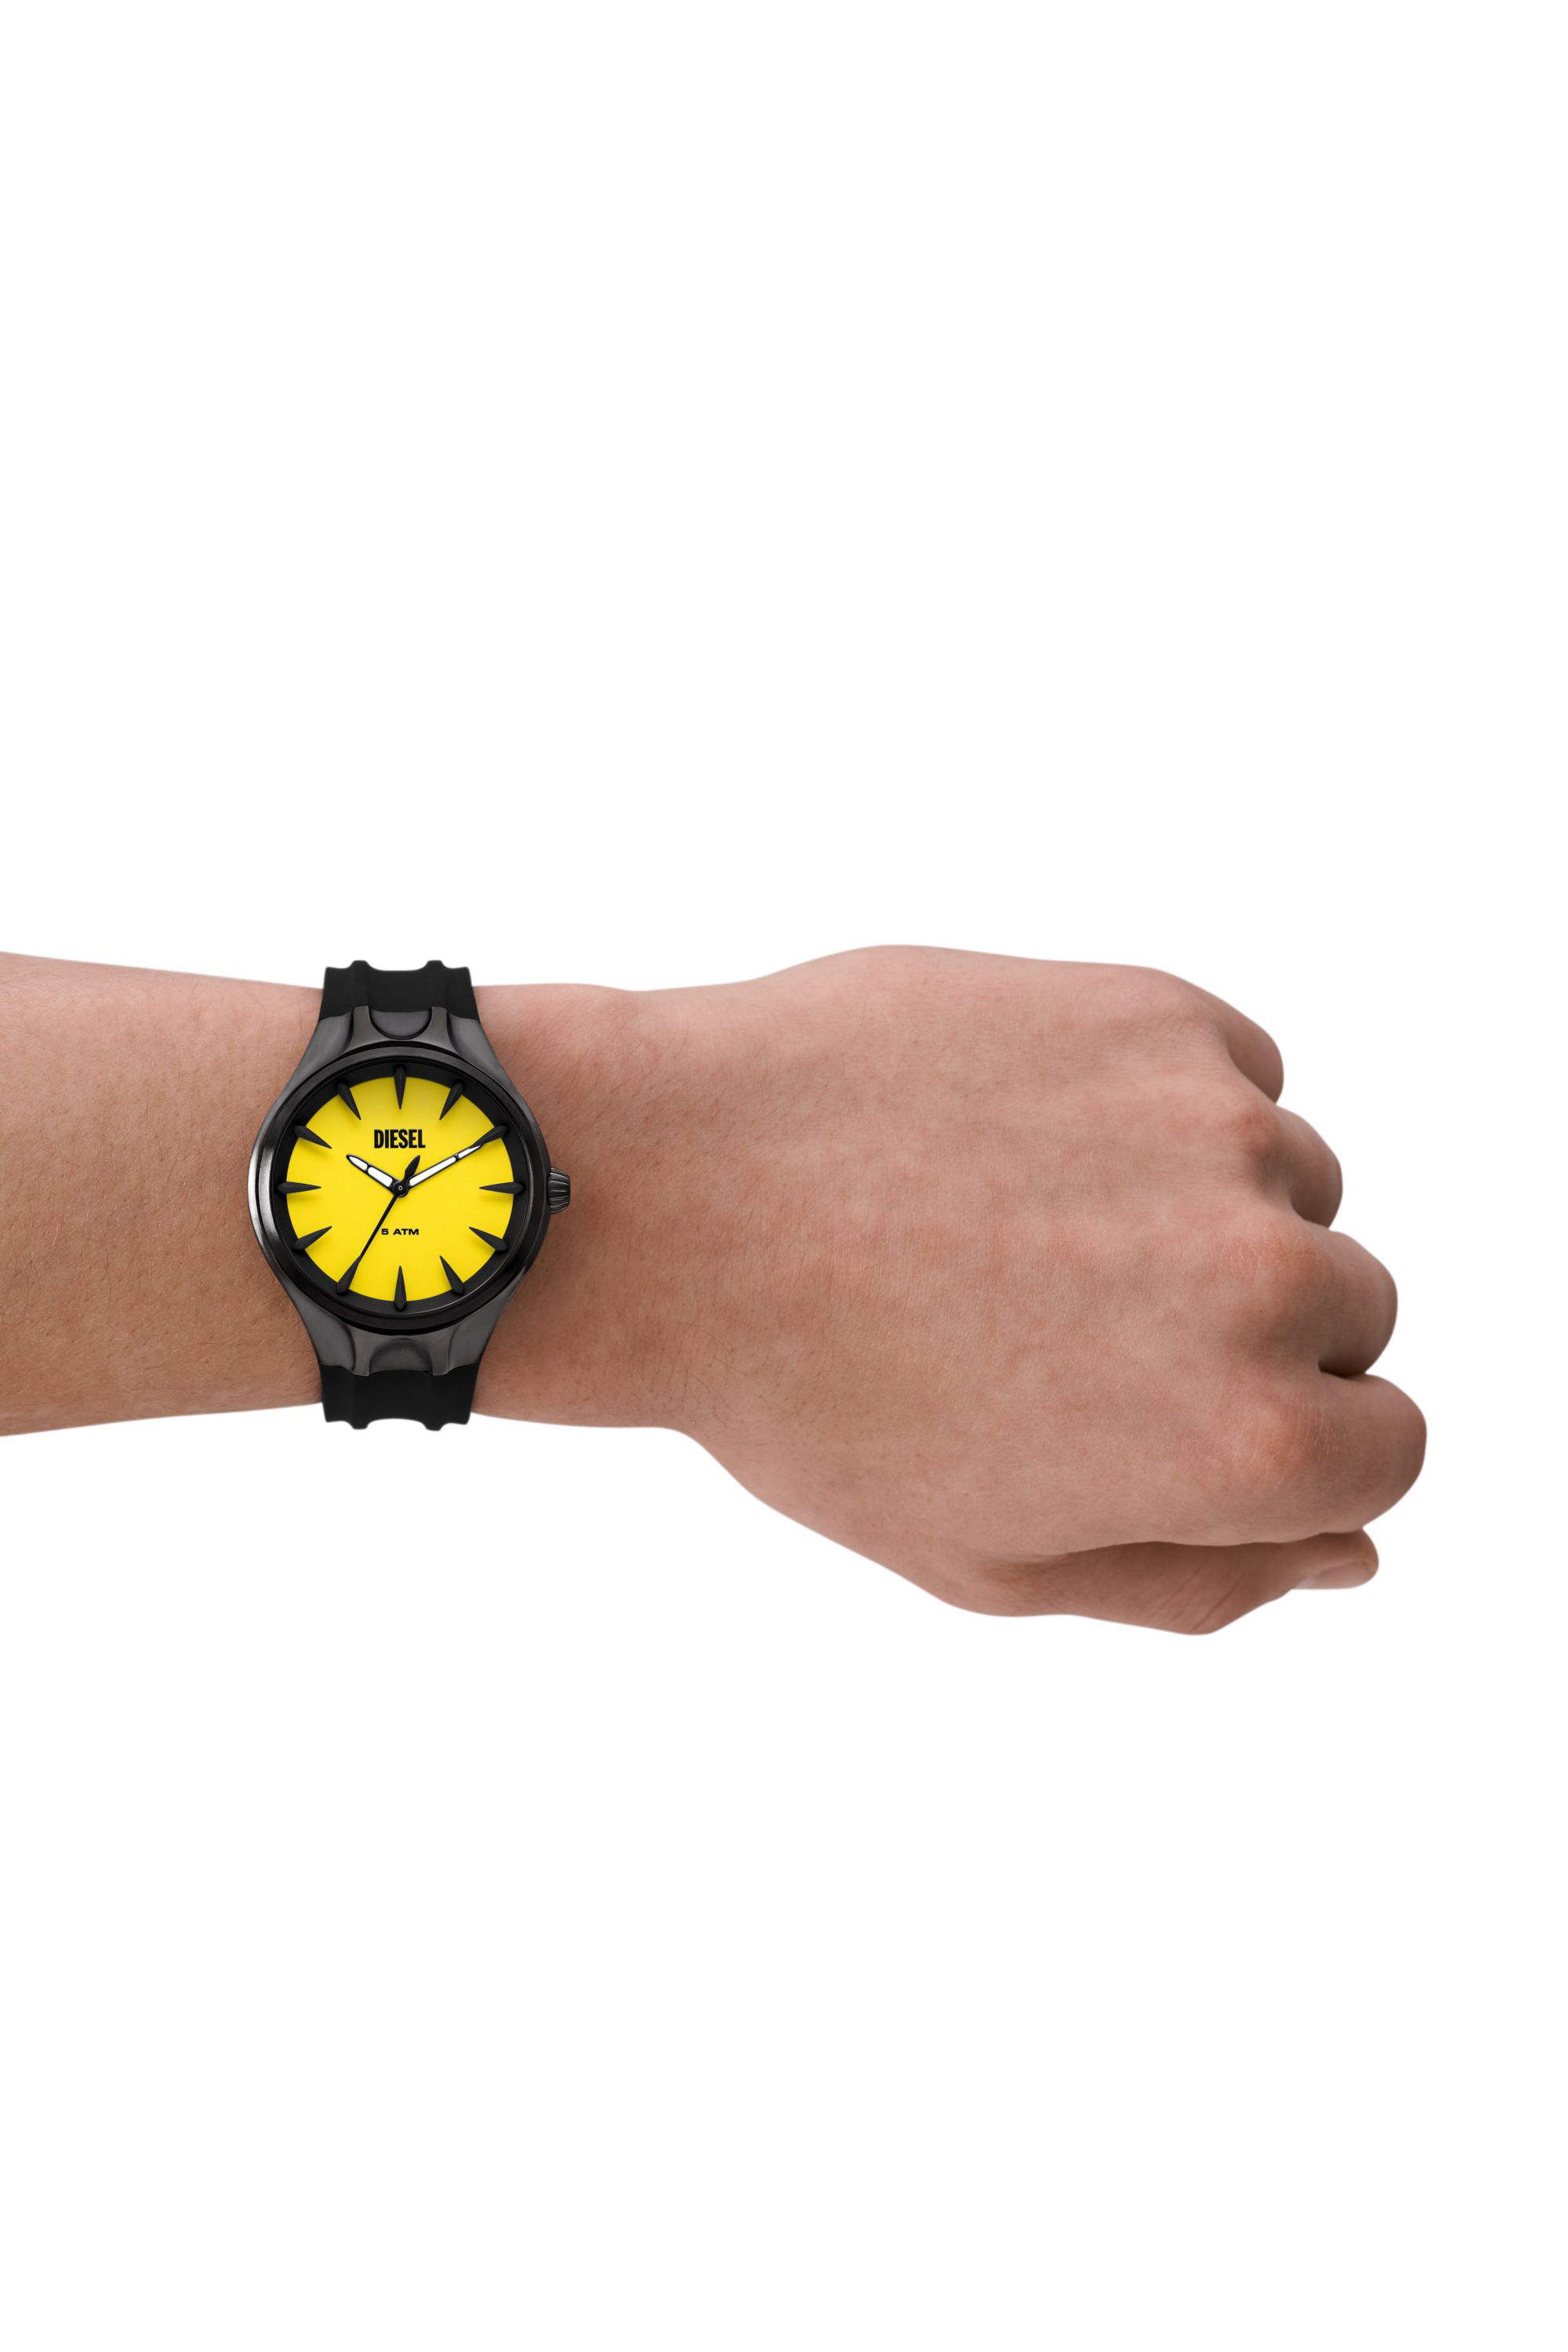 Diesel - DZ2201, Man Streamline three-hand black silicone watch in Black - Image 5